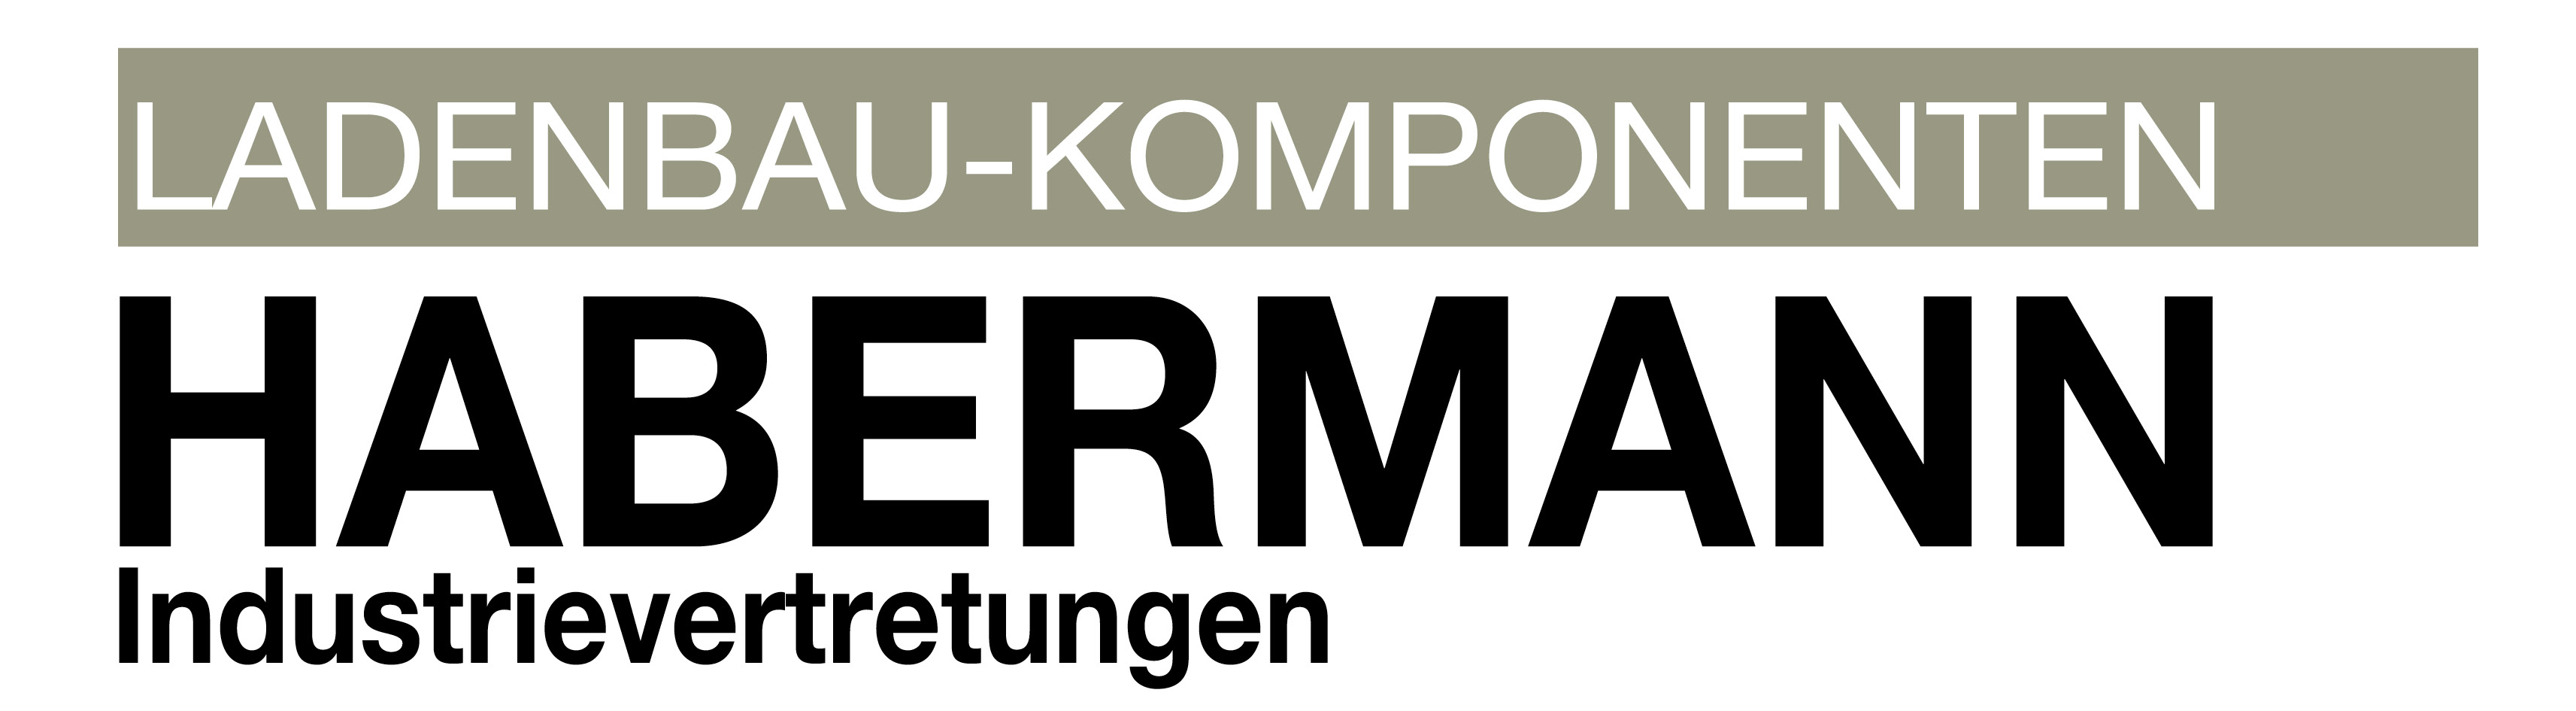 Ladenbau Komponenten - Habermann & Hennecke